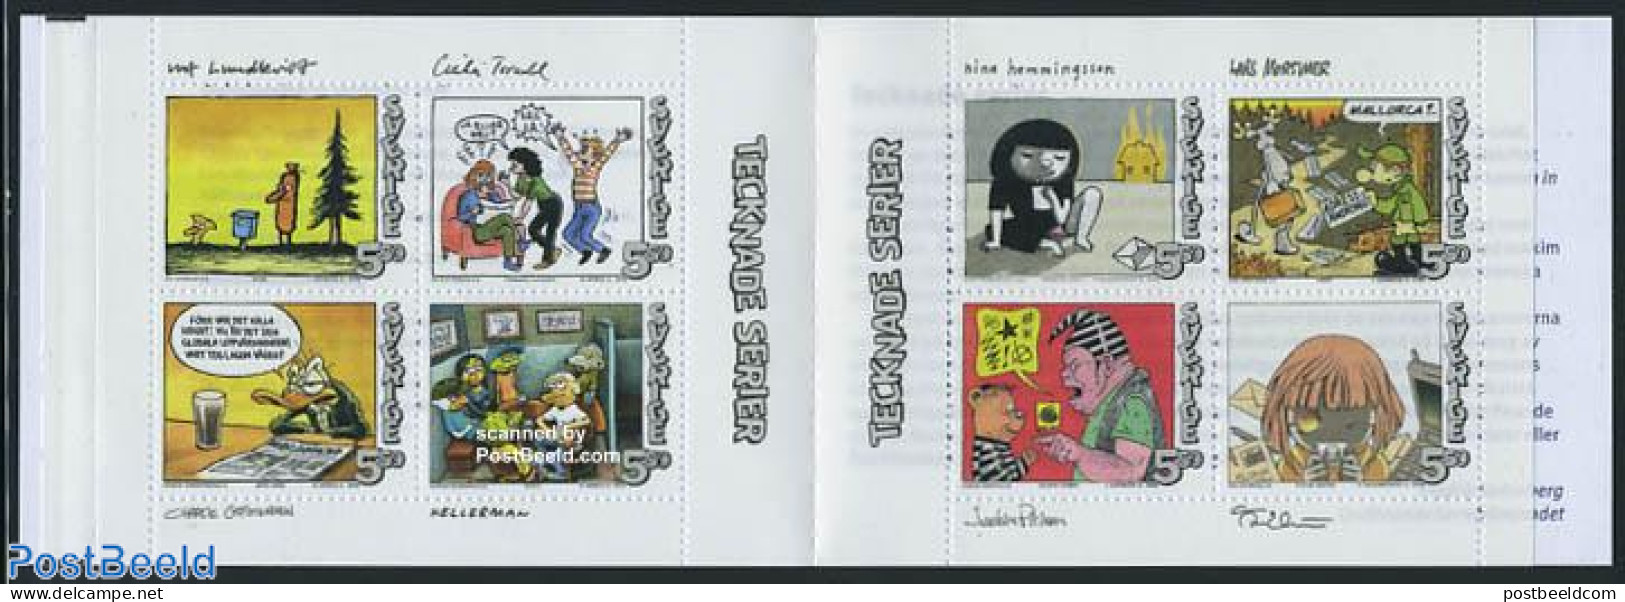 Sweden 2008 Comics 8v In Booklet, Mint NH, Stamp Booklets - Art - Comics (except Disney) - Nuovi